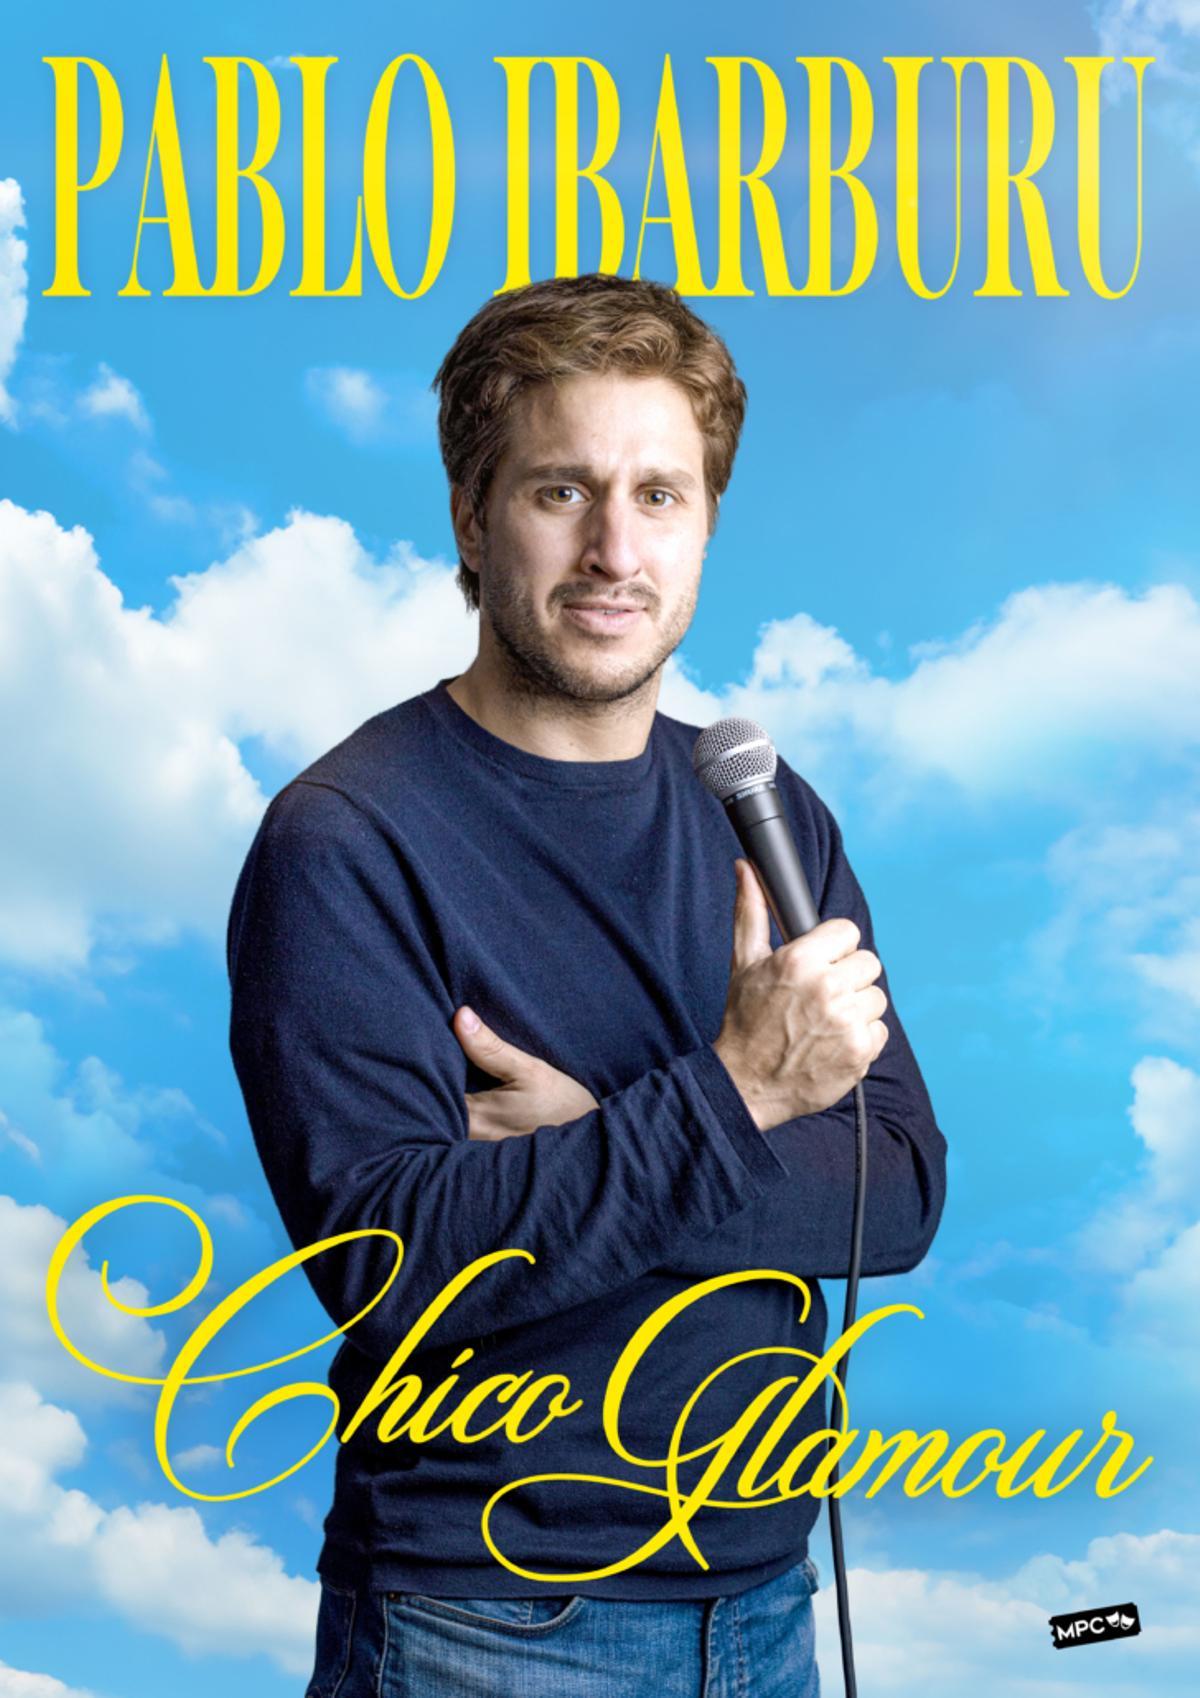 Pablo Ibarburu presenta Chico Glamour en La Bohemia